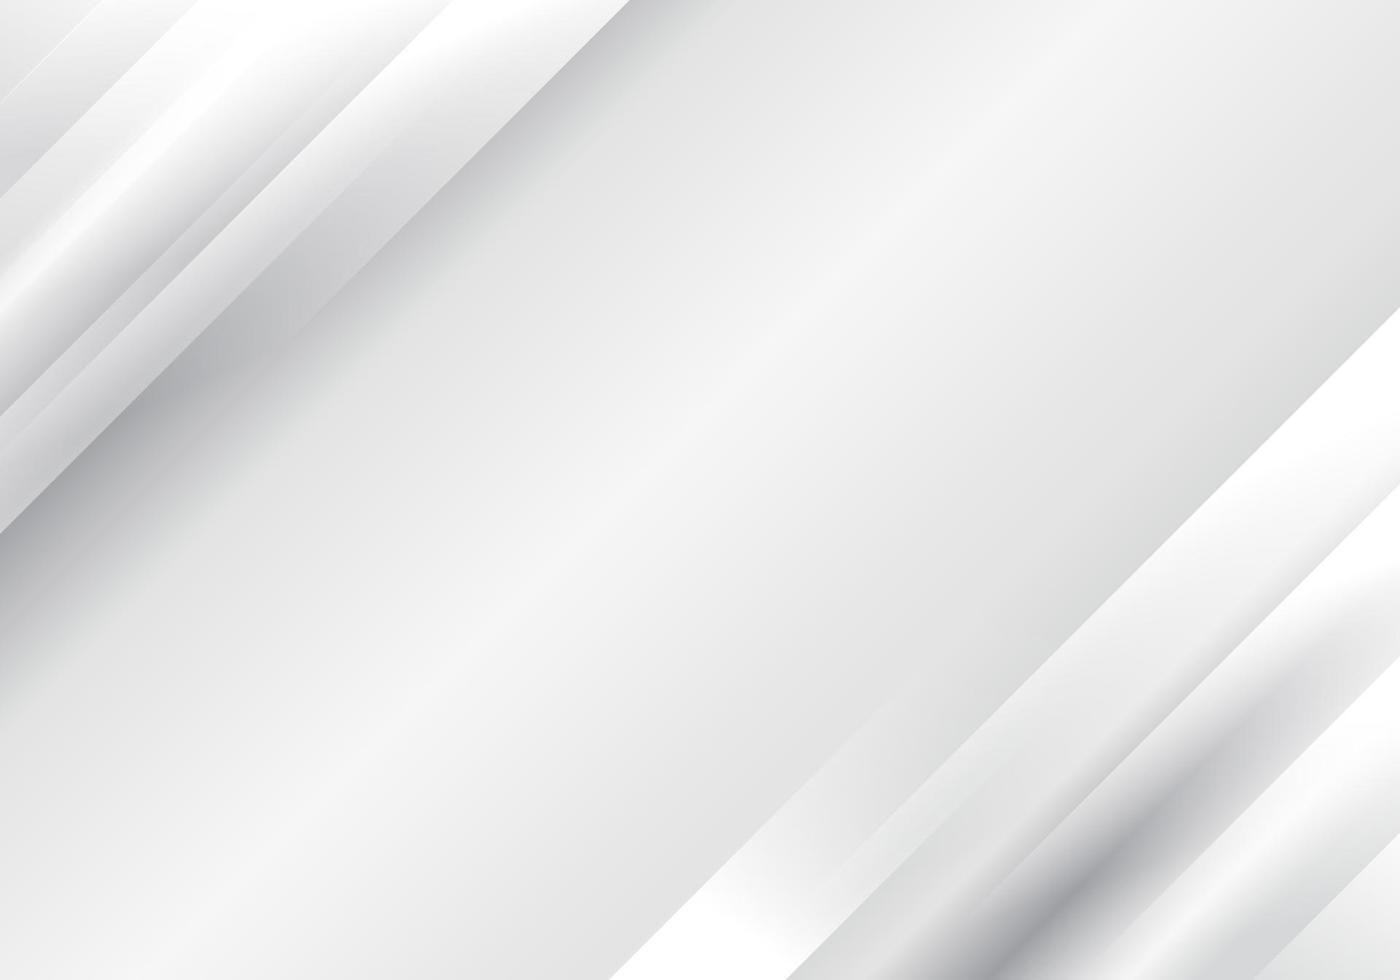 abstracte witte en grijze diagonale strepen gelaagde achtergrond vector